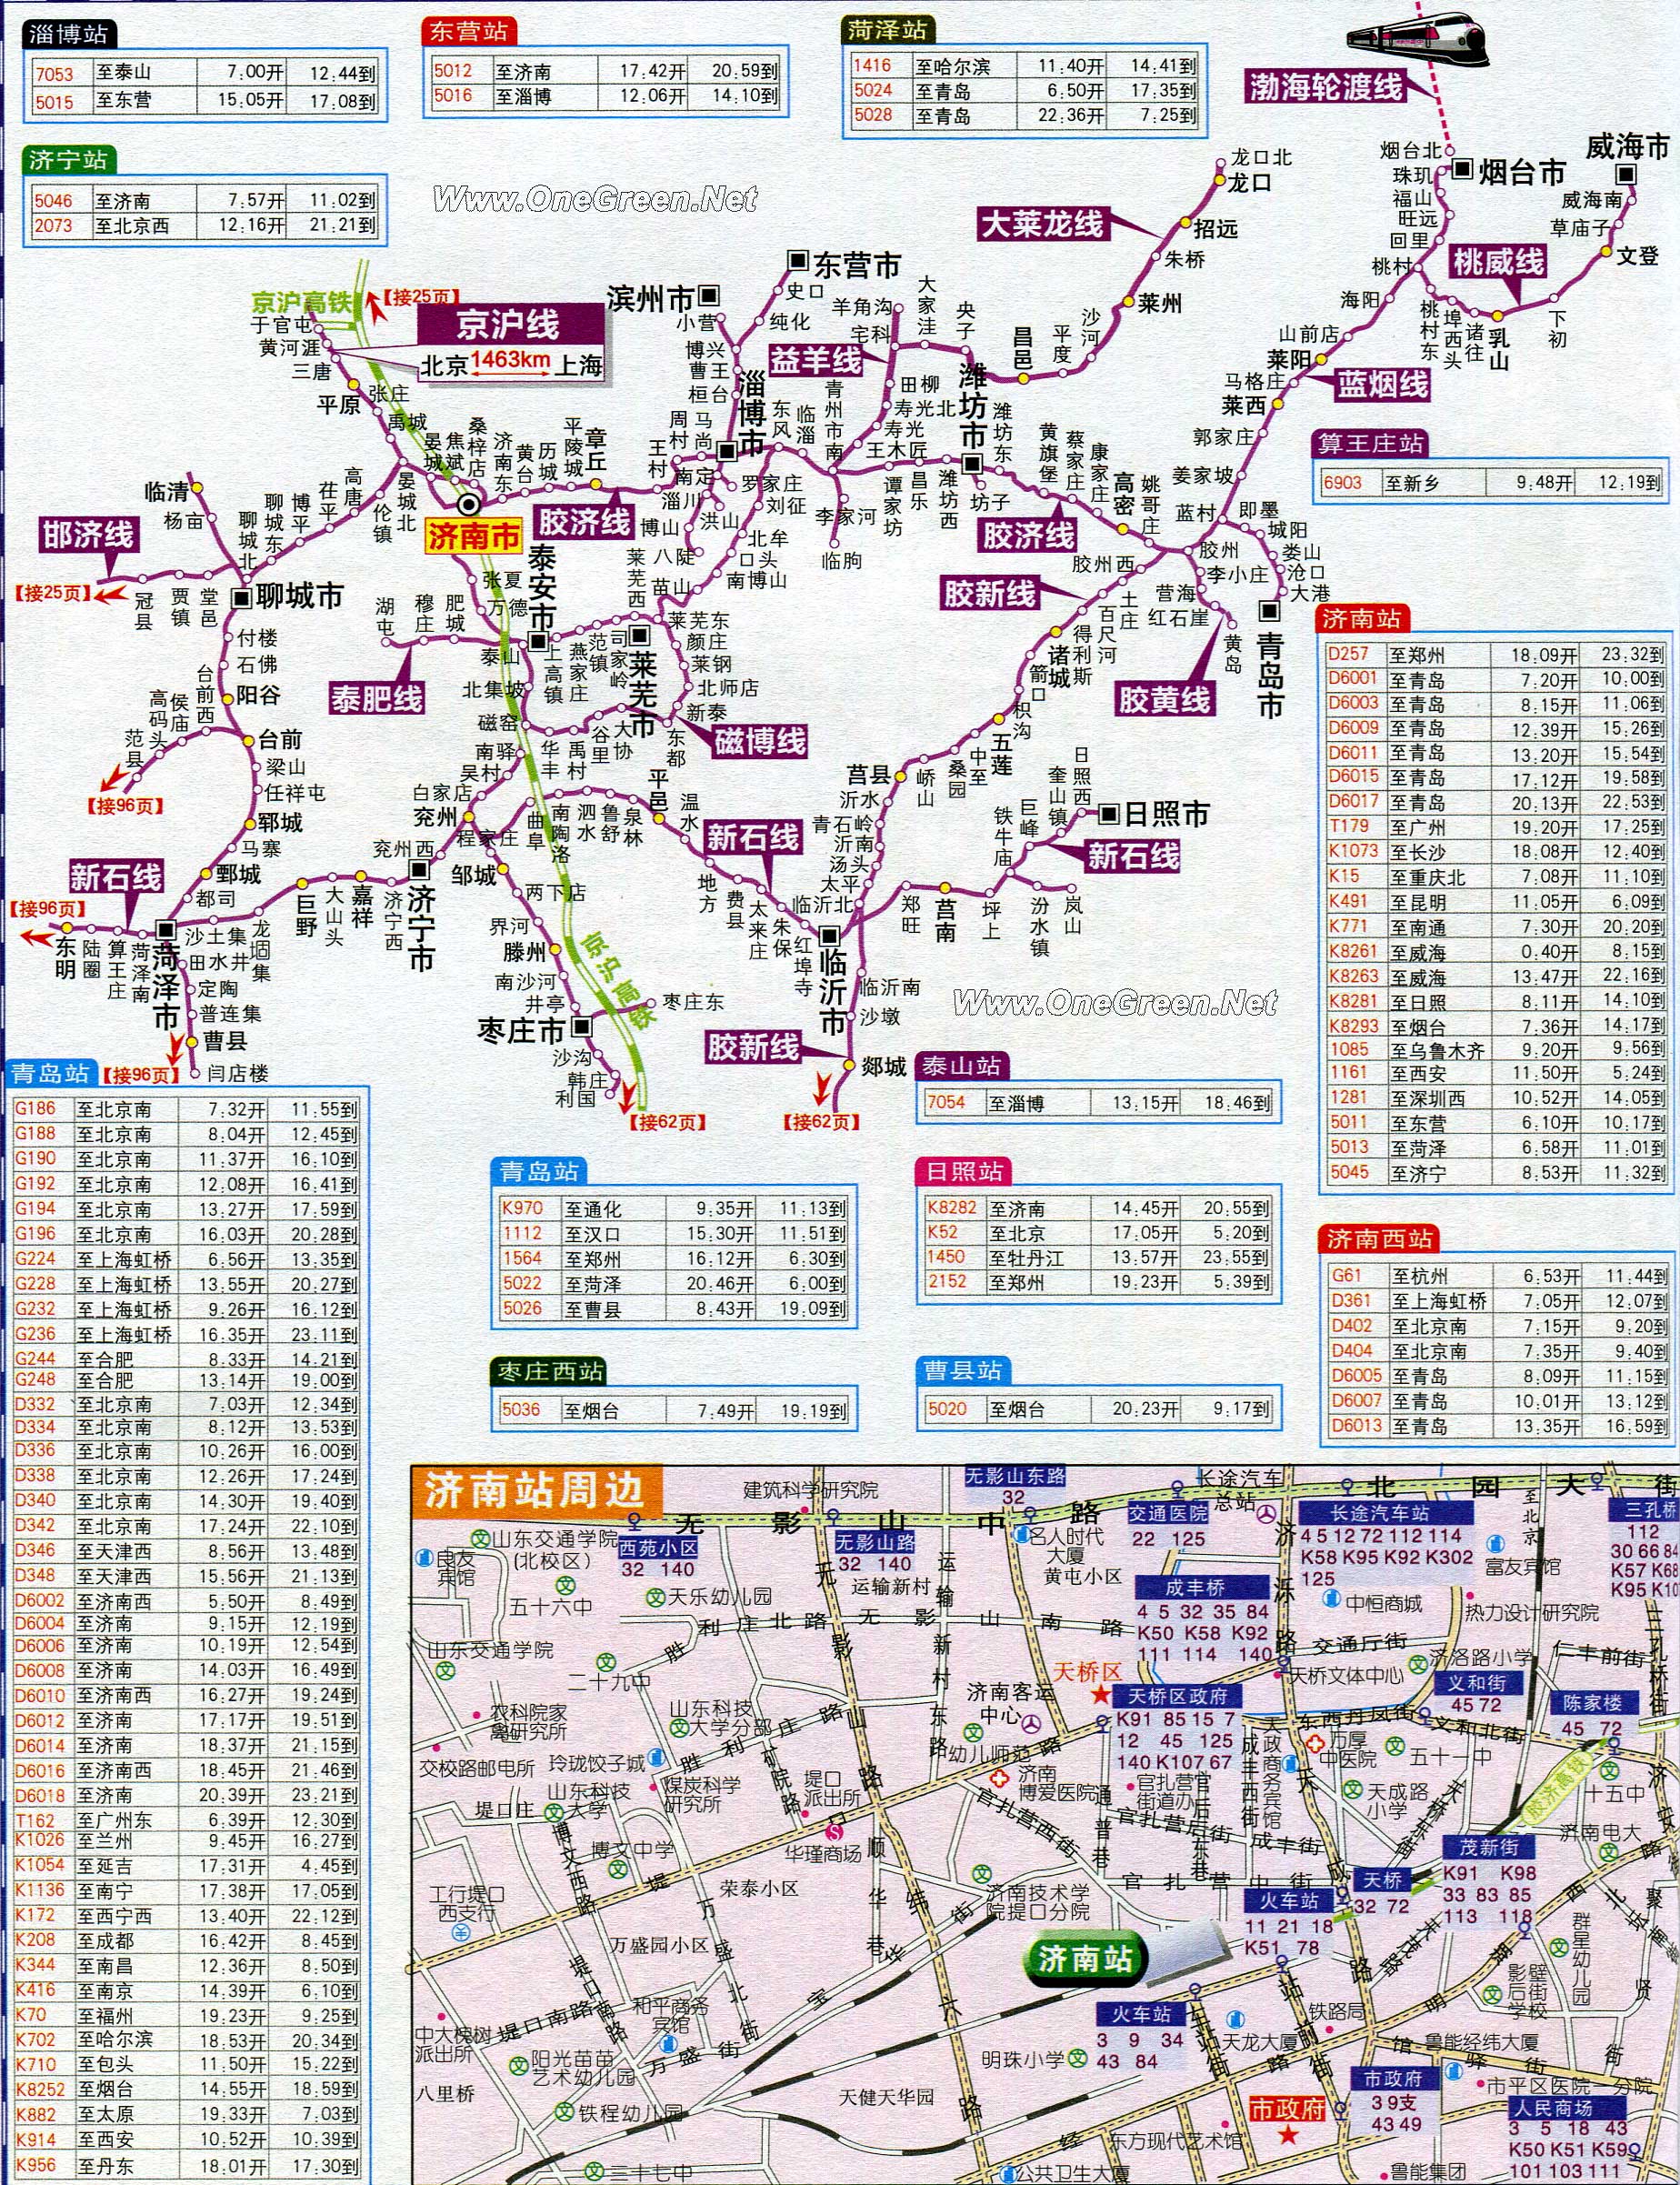 山东省铁路交通地图